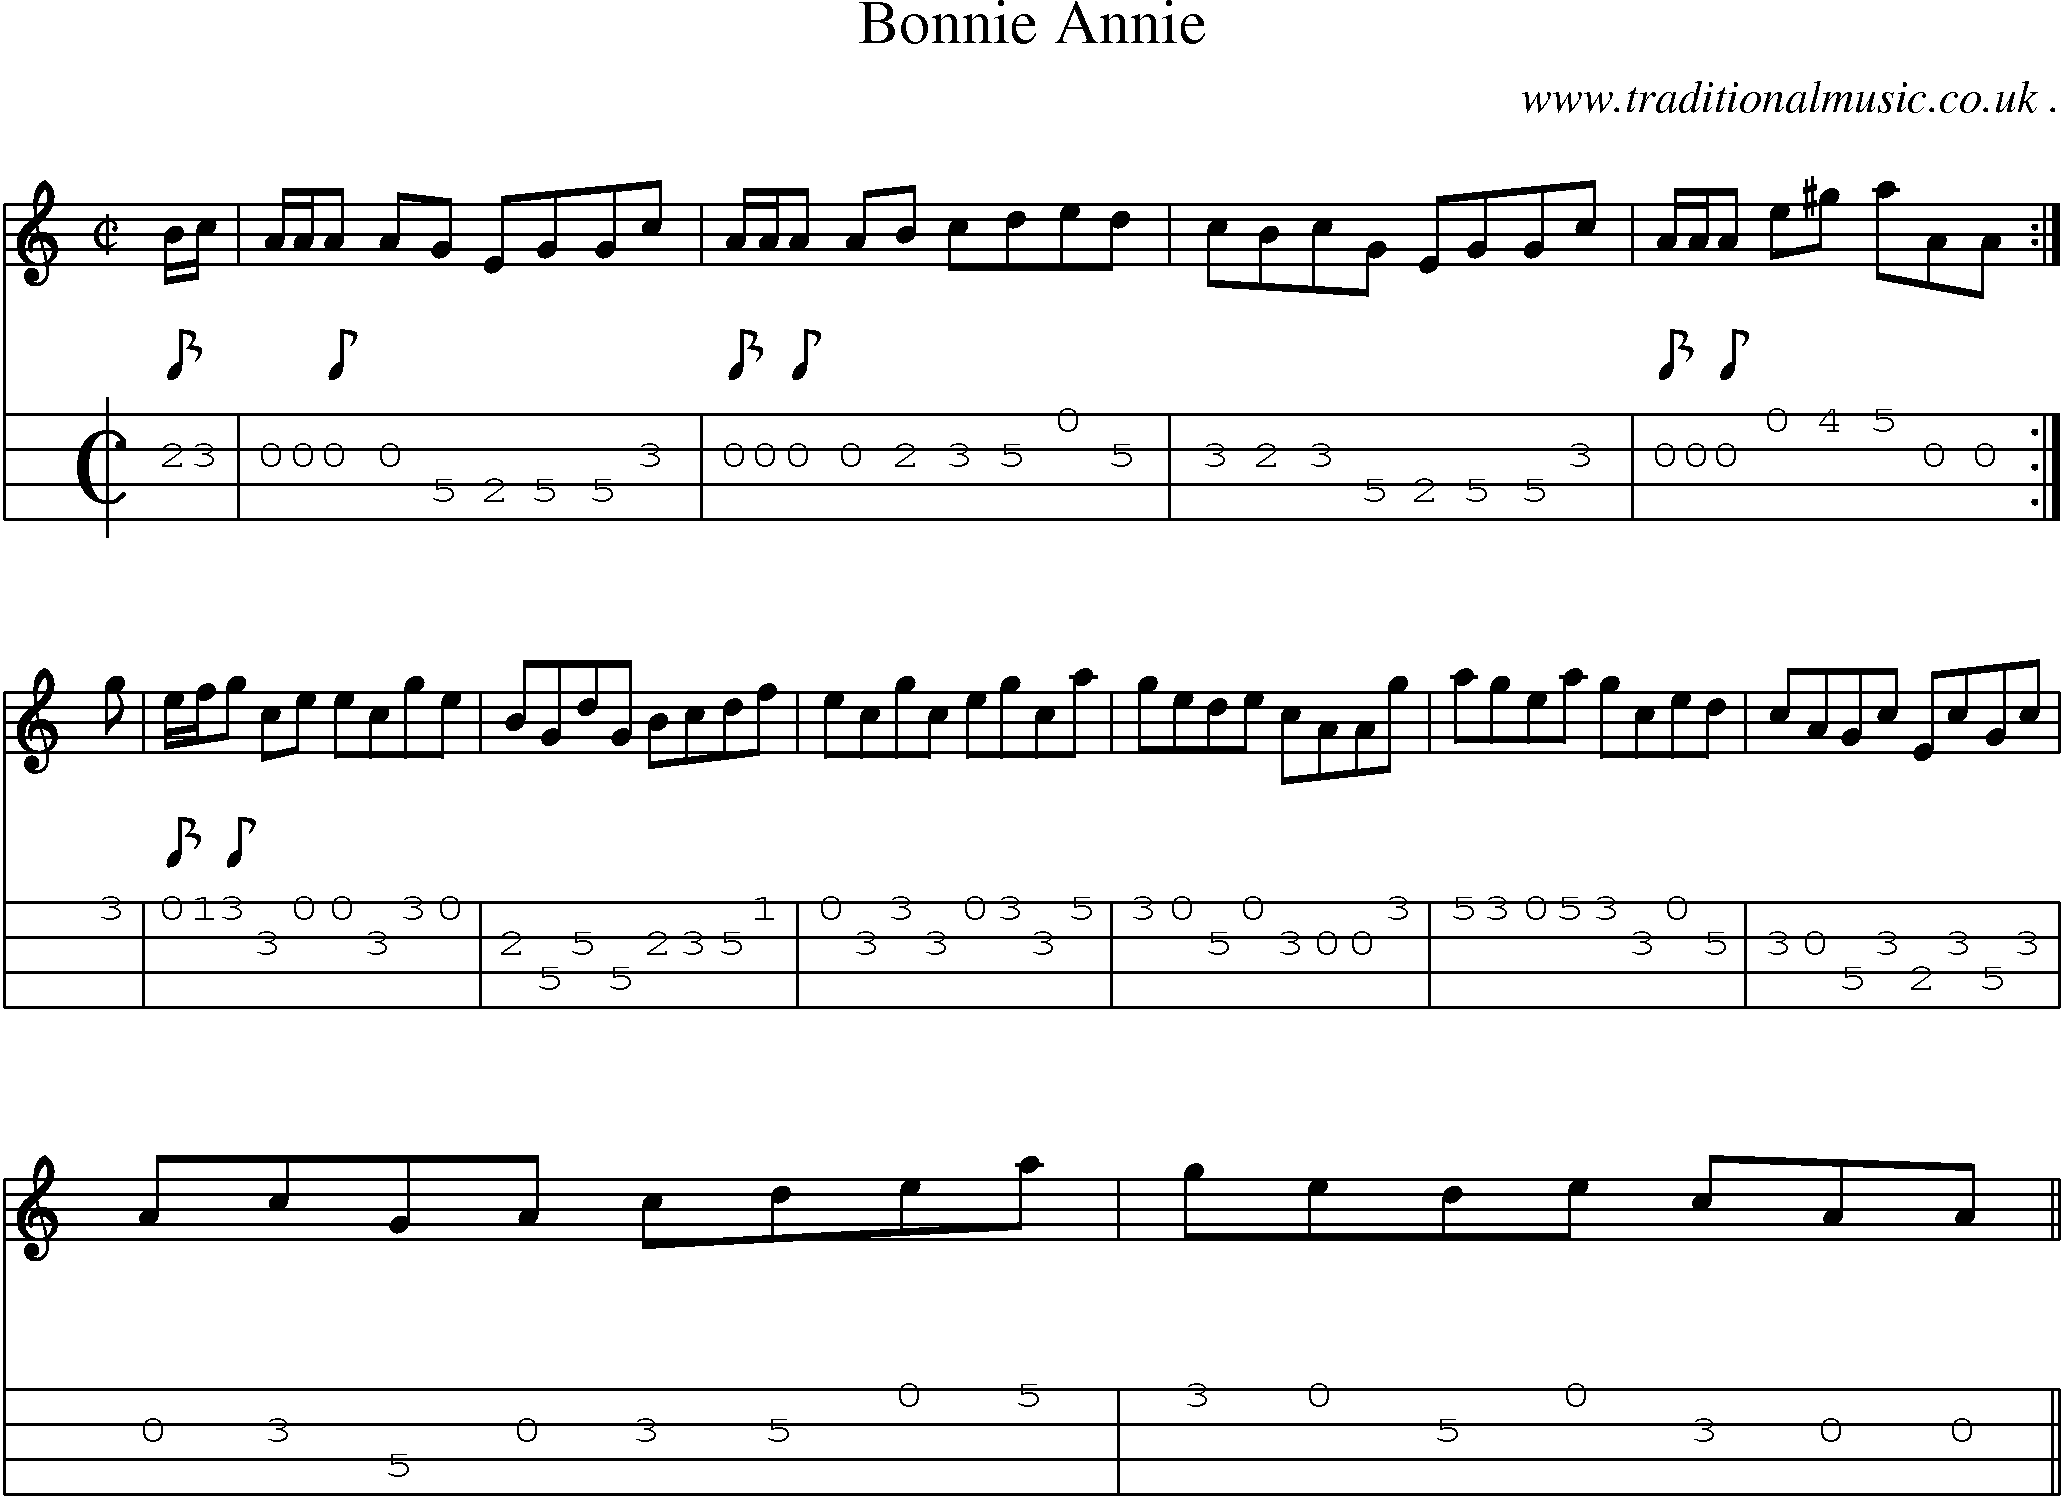 Sheet-music  score, Chords and Mandolin Tabs for Bonnie Annie